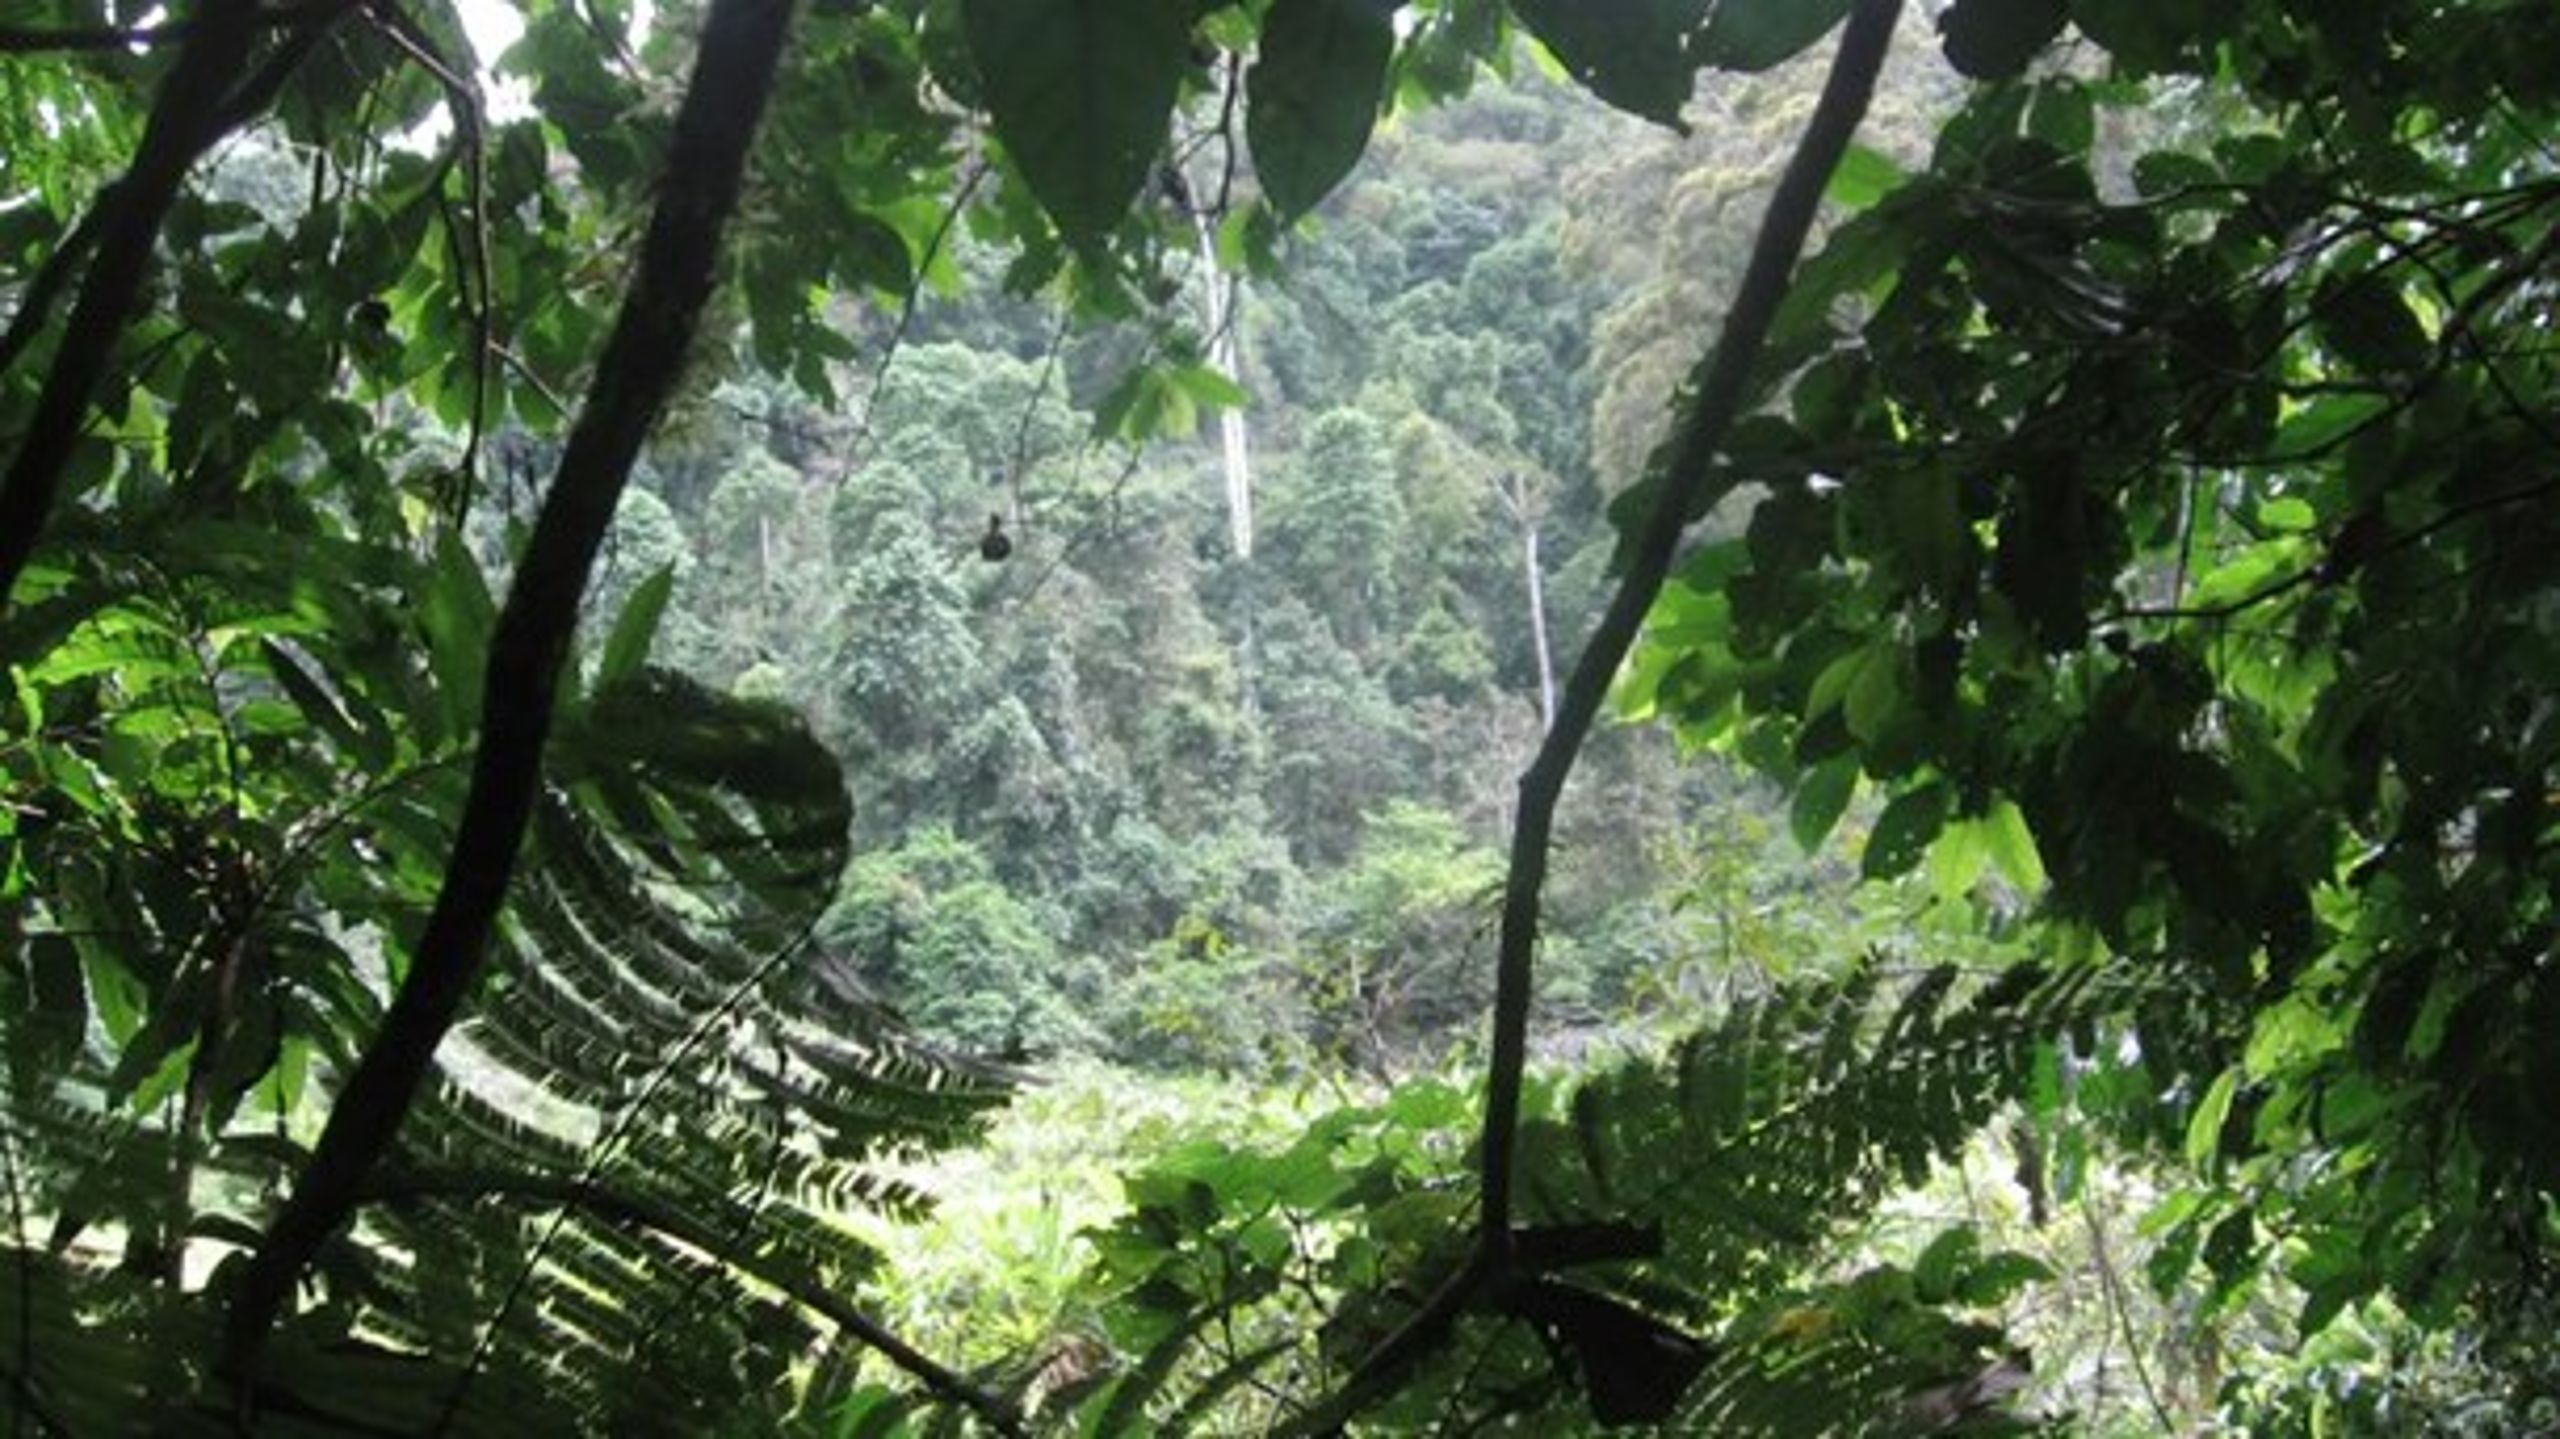 Regnskogsbevarande insatser, bland annat i Brasilien, har ingått i handelsverktygen under nuvarande Kyotoprotokollet. <br>